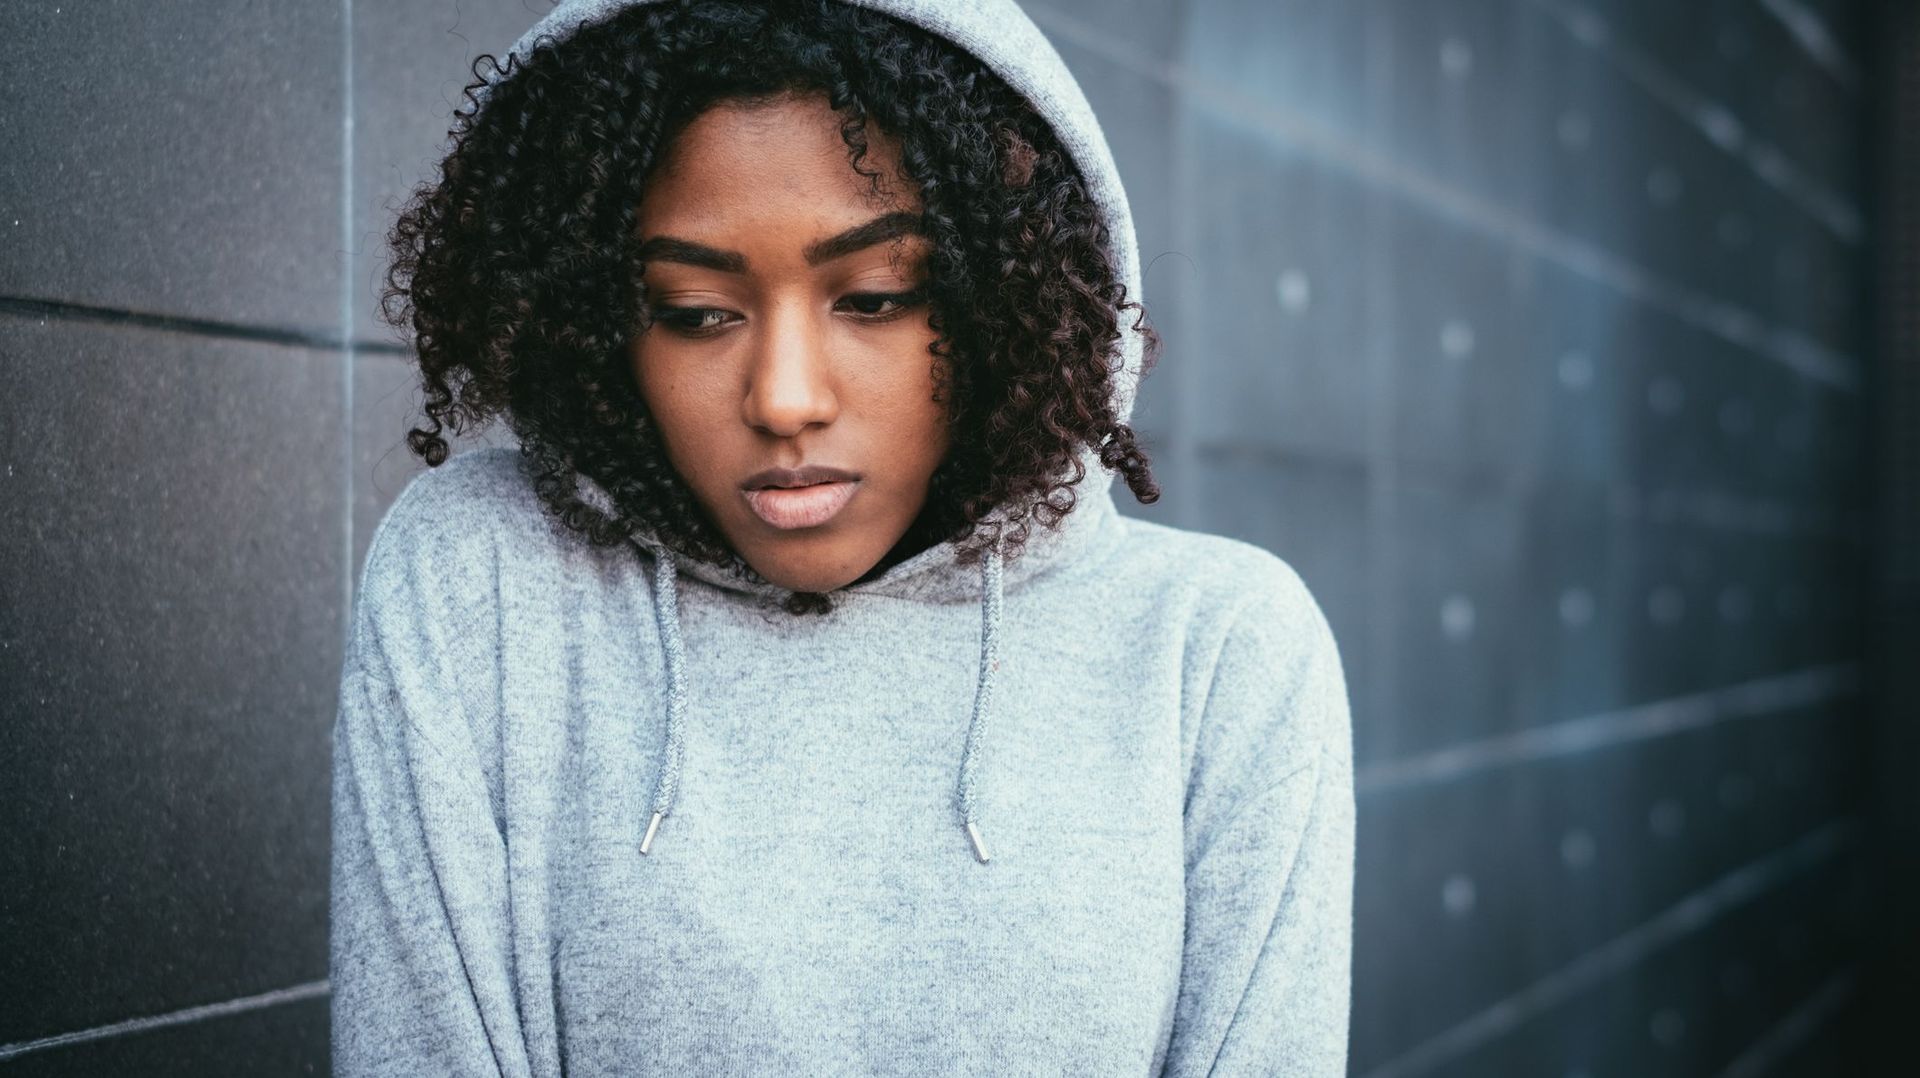 Les tentatives de suicide chez les adolescents afro-américains en hausse